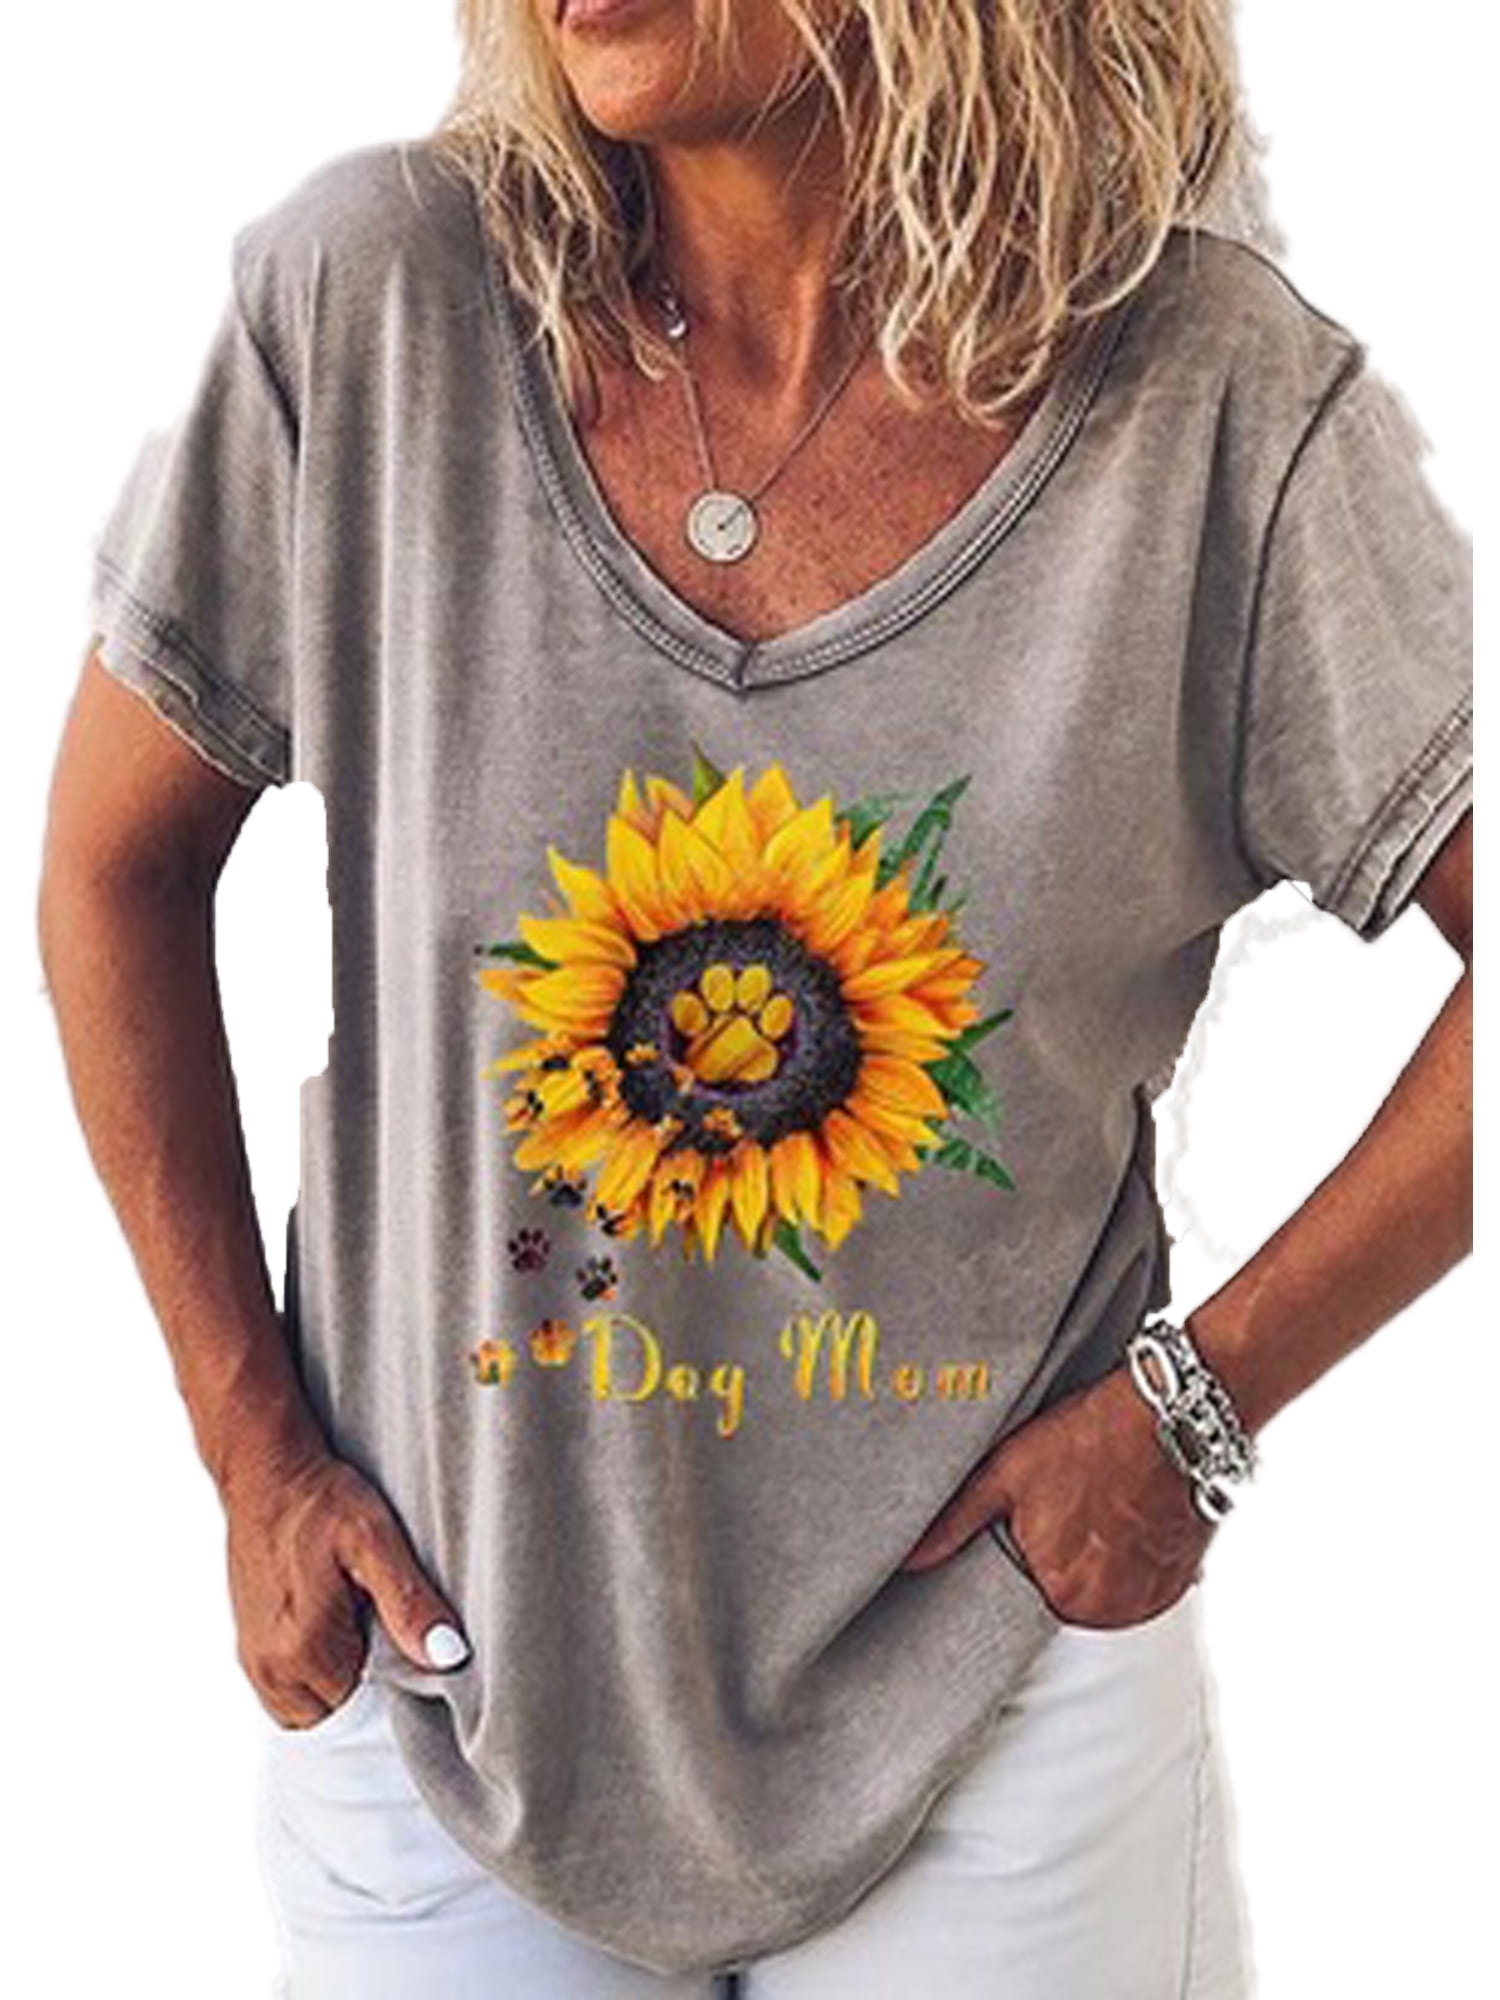 Kaei&Shi Roll Sleeve Graphic T Shirt Women Sunflower Tshirt Womens Summer Top Flower Print Short Sleeve Shirt Tee